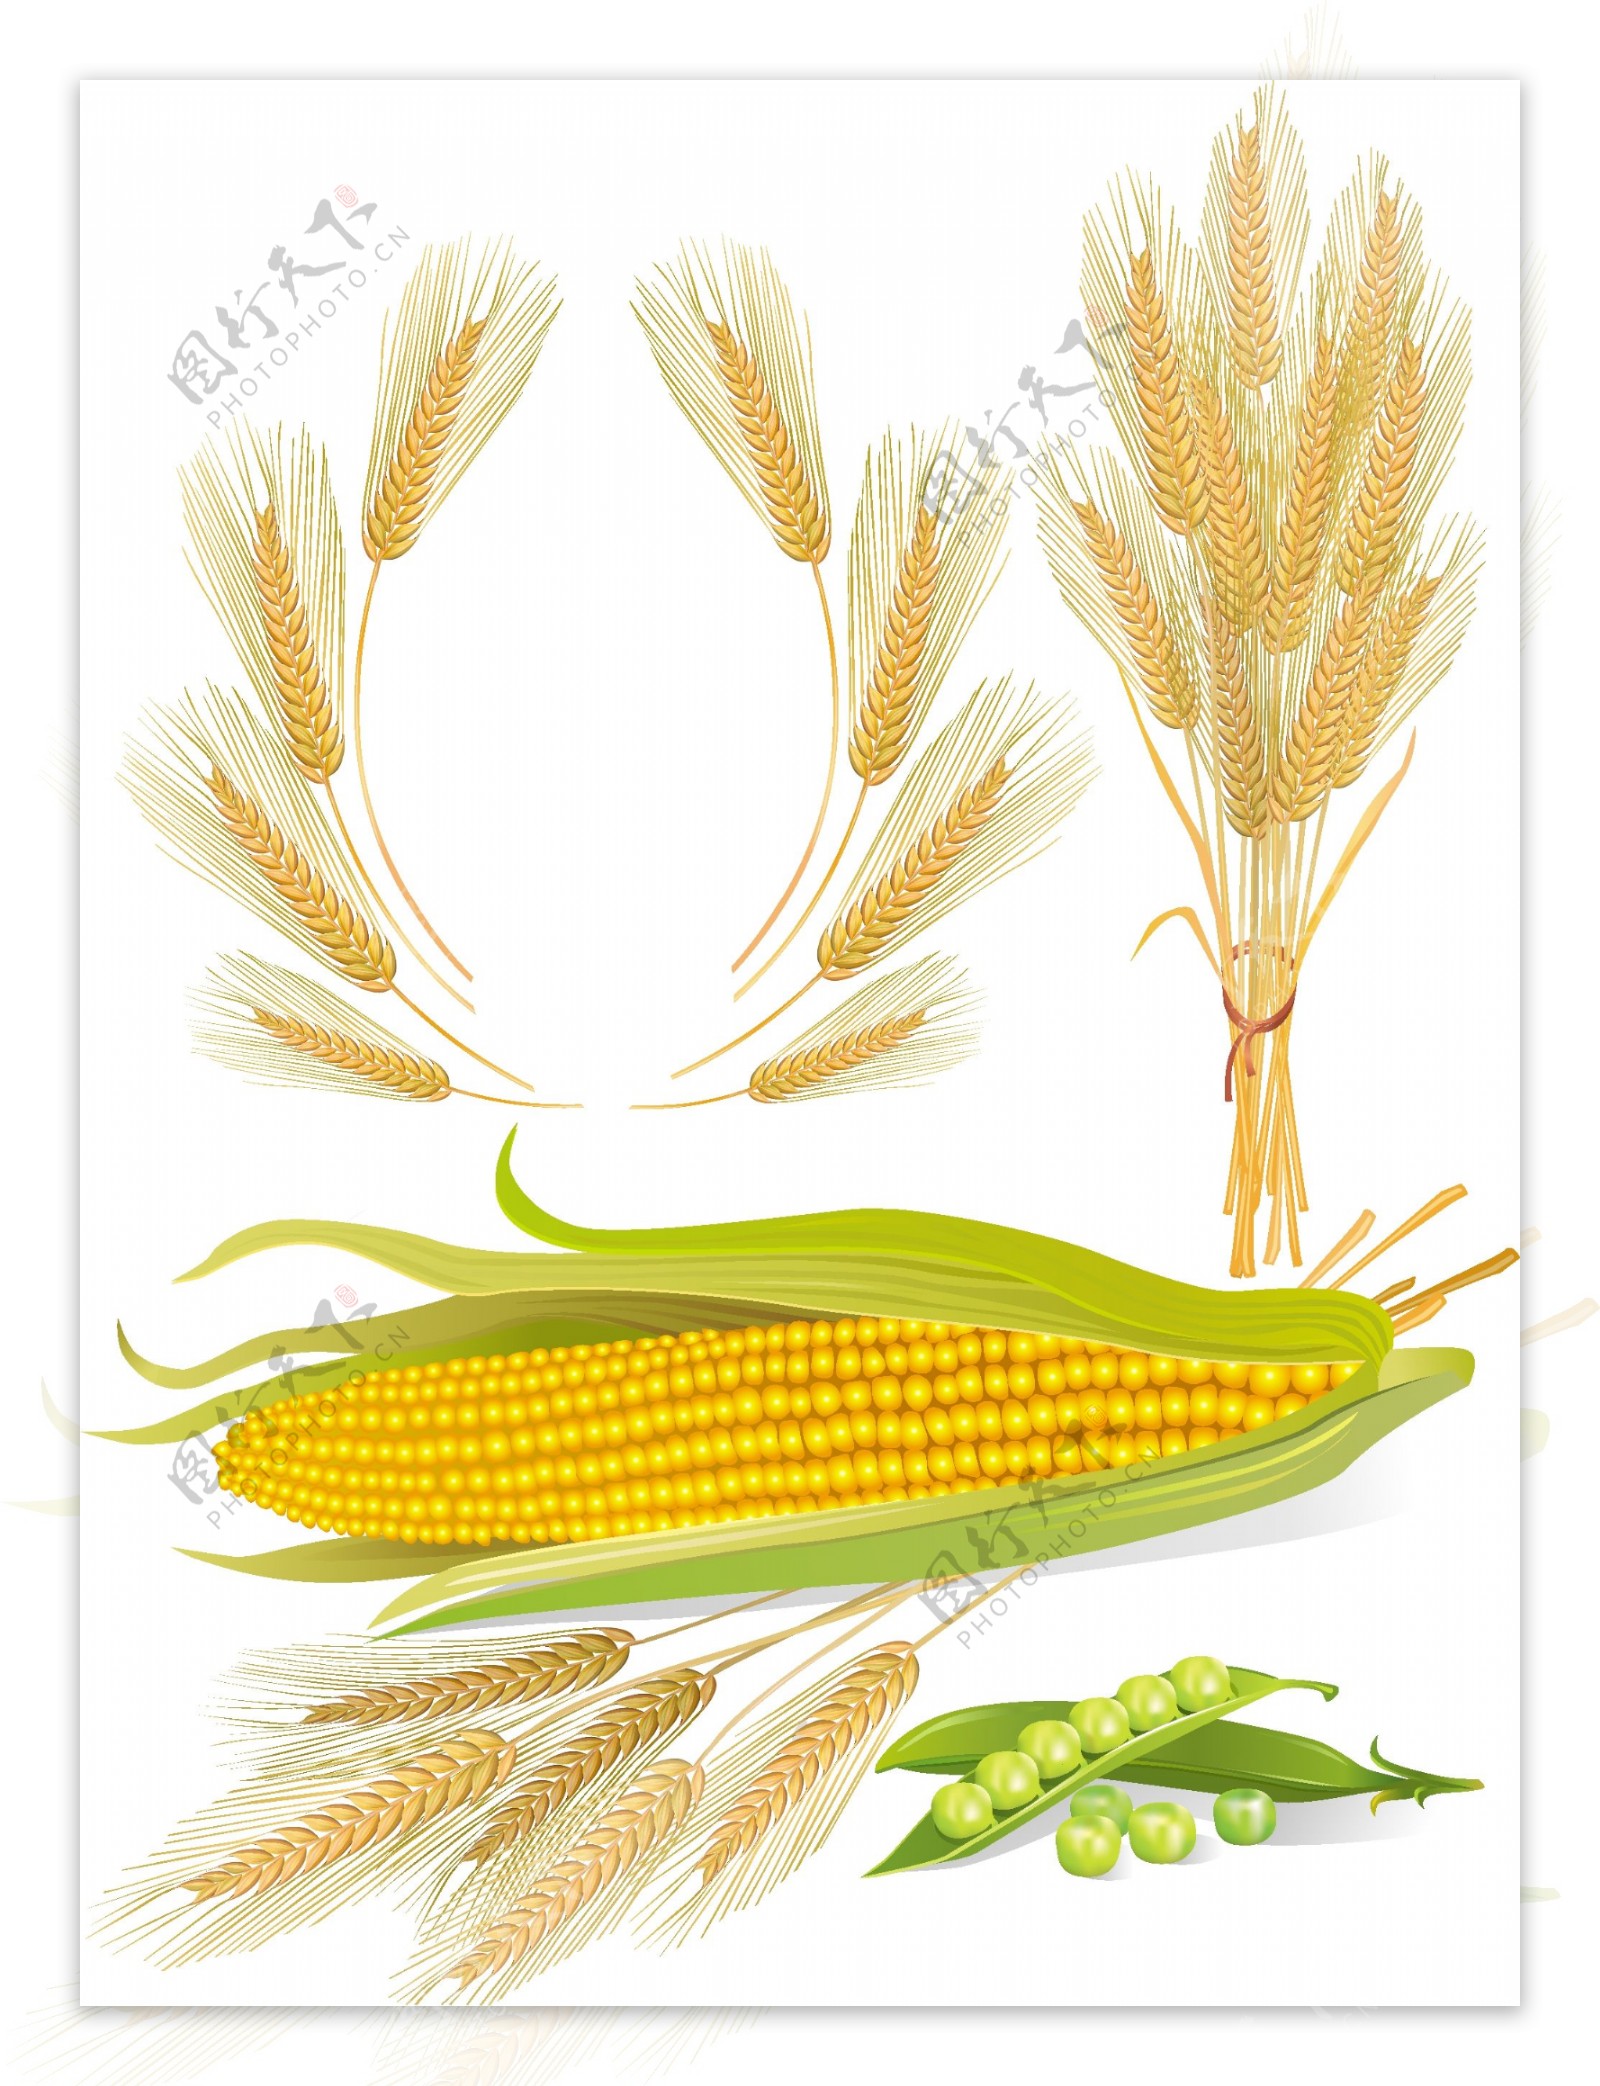 玉米和小麦矢量素材